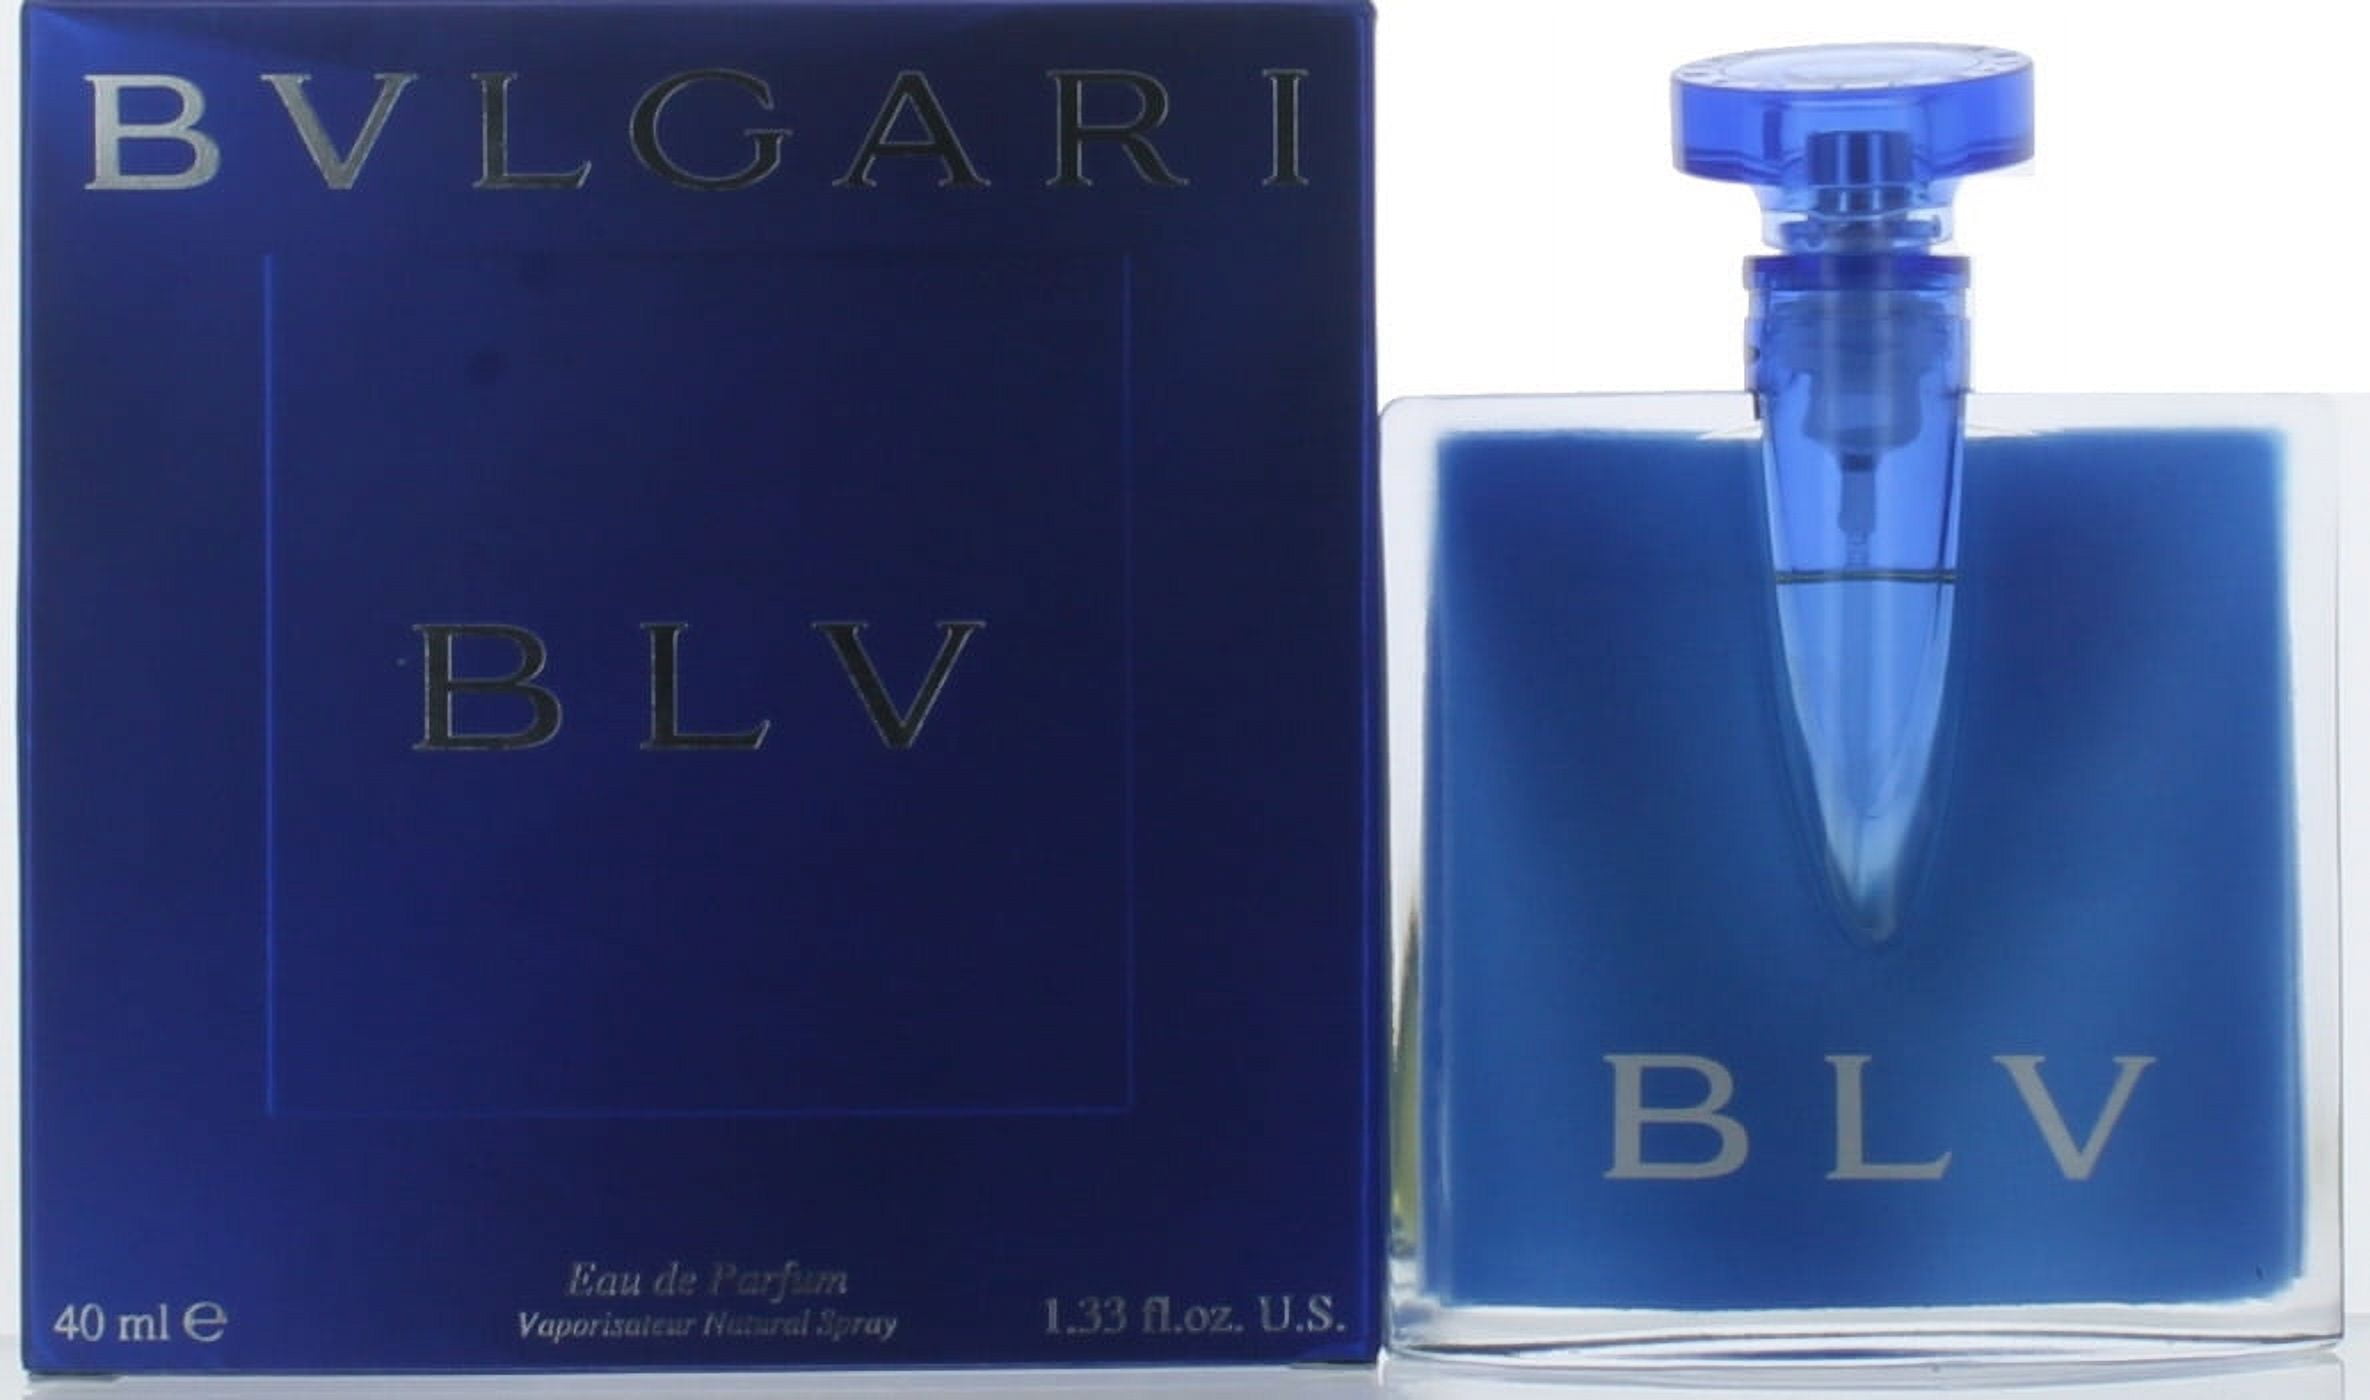 Bvlgari Blv by Bvlgari - Buy online